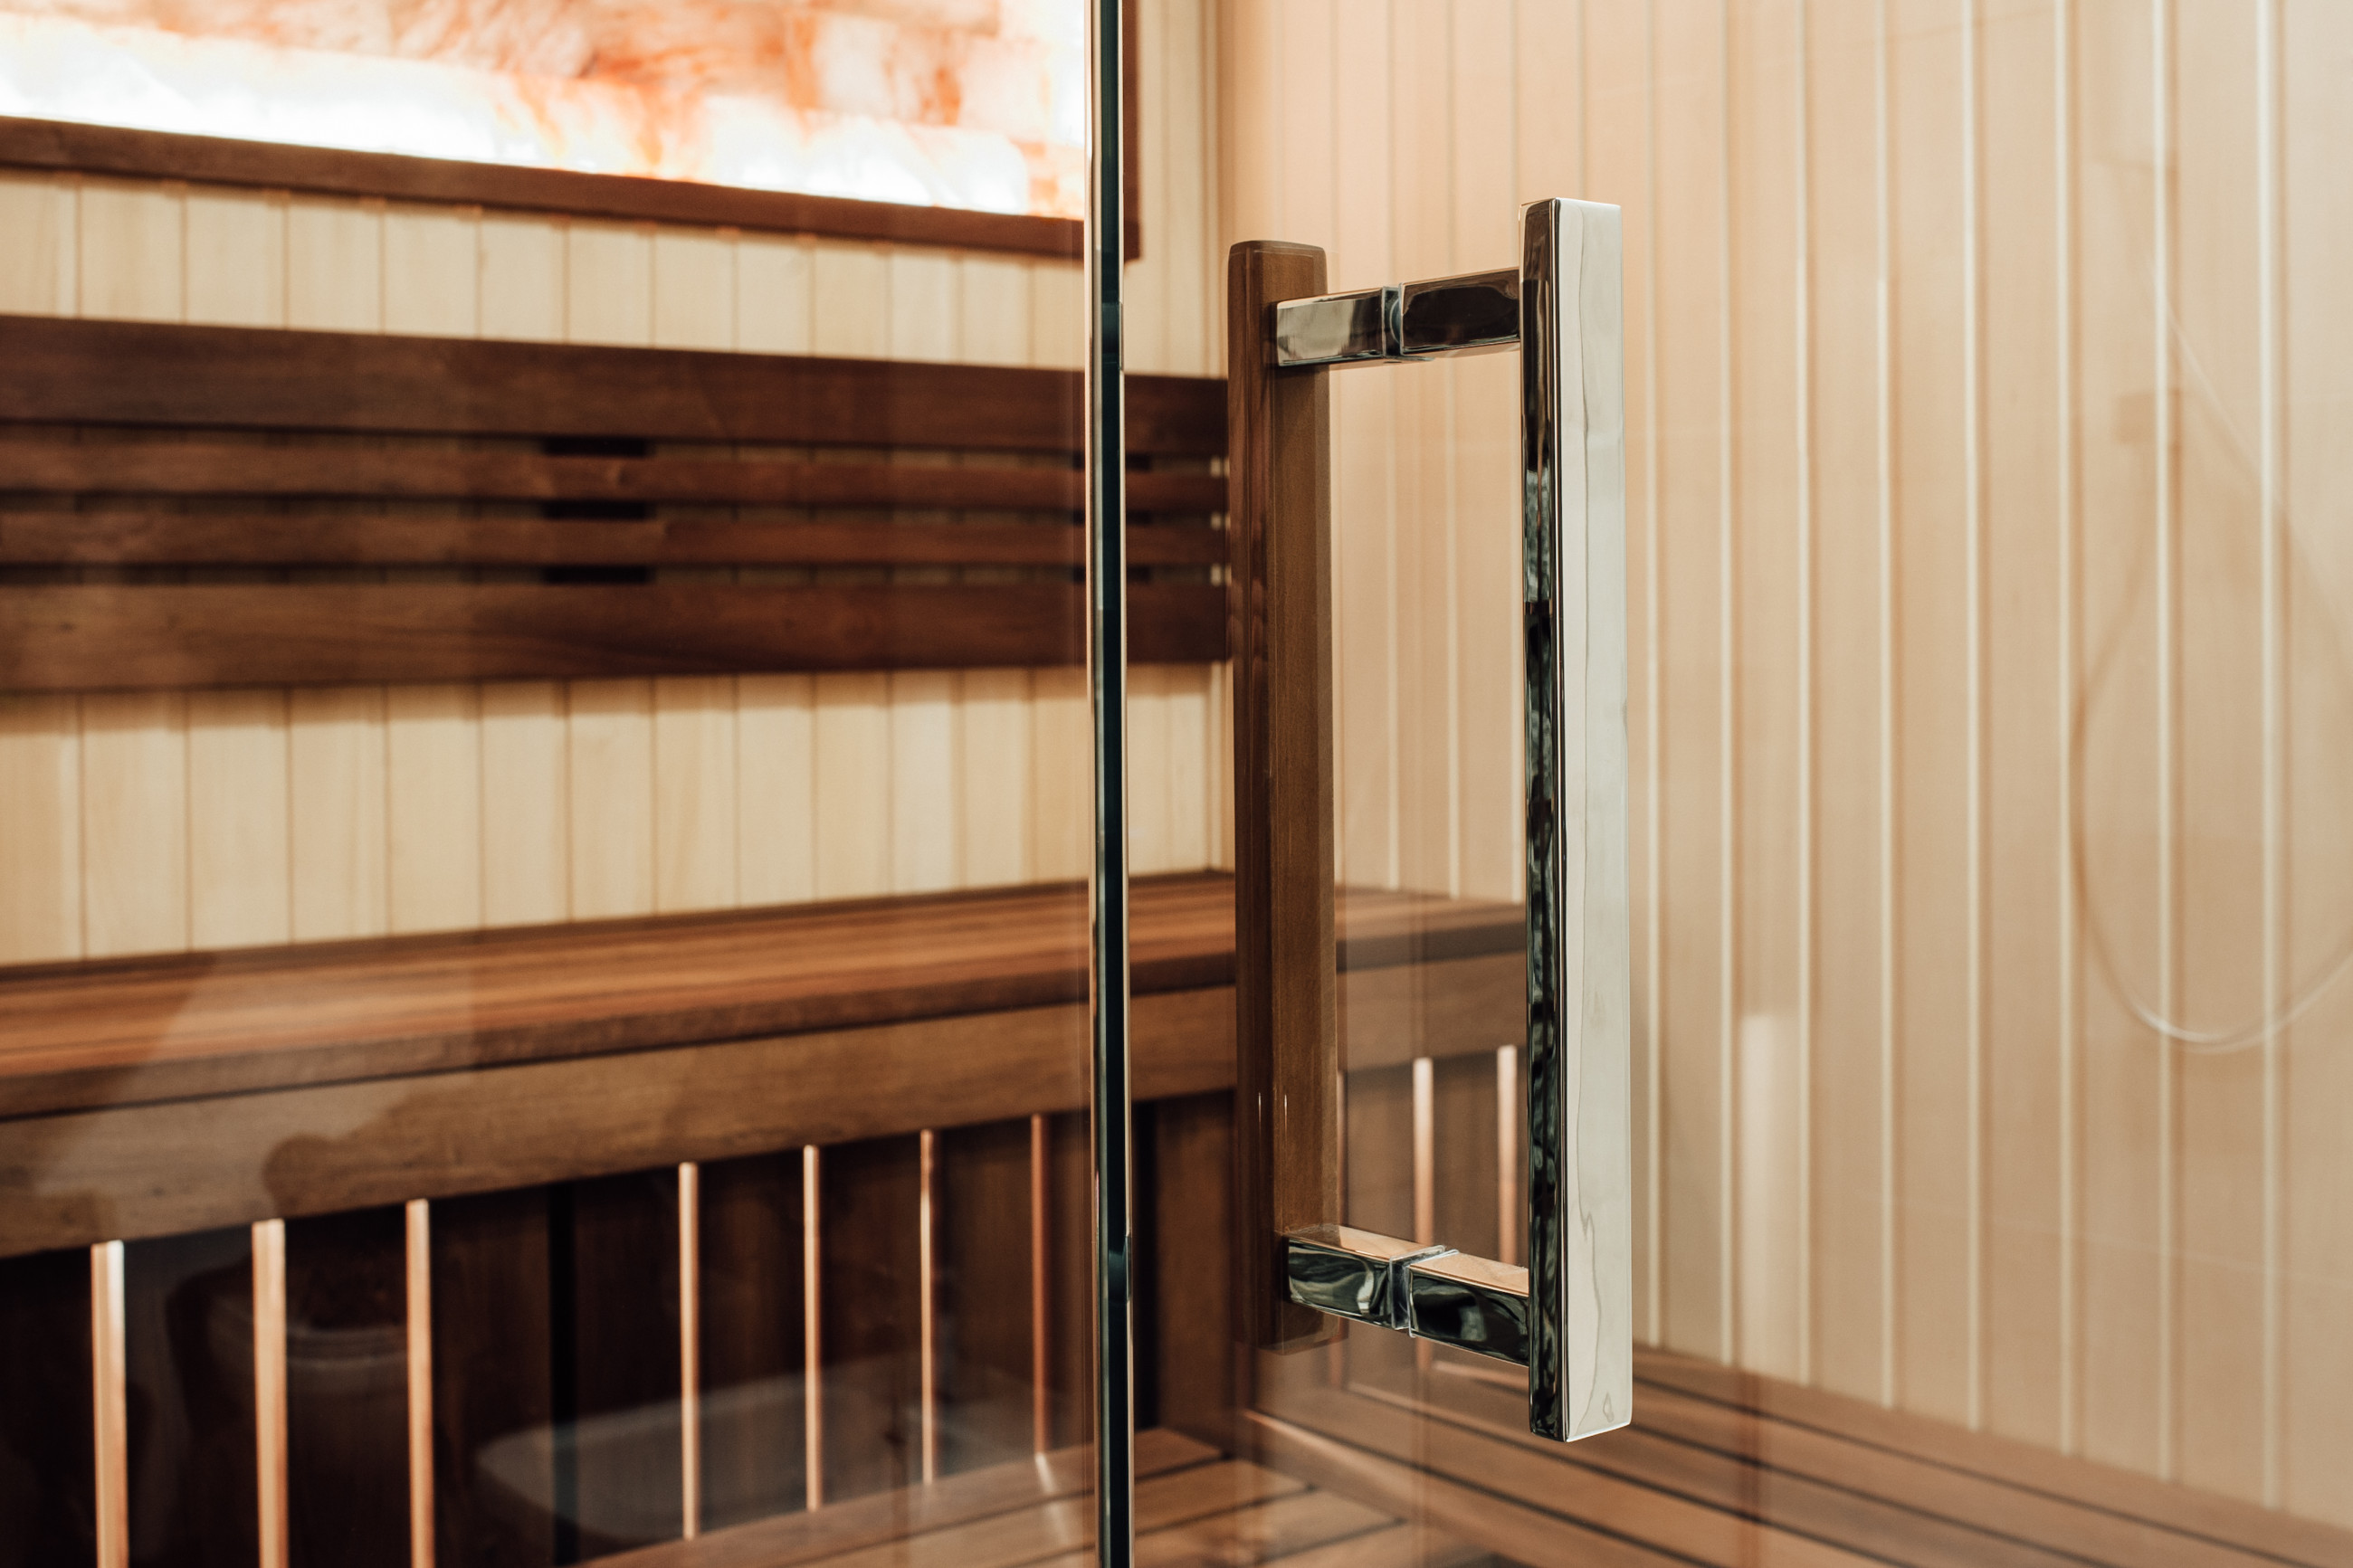 Glass door handle entering sauna